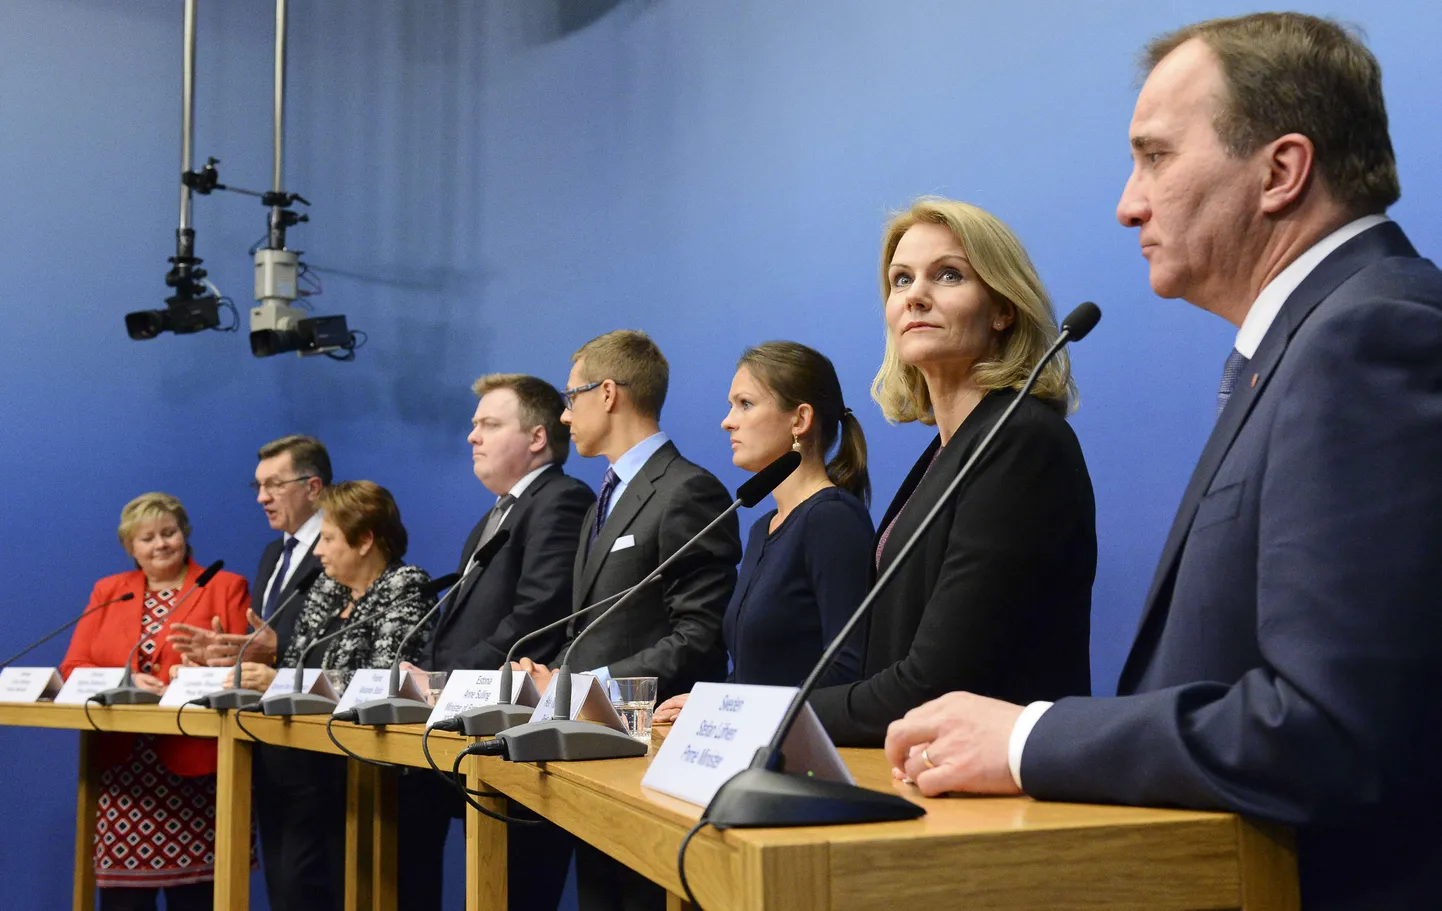 Анне Суллинг (третья справа) на пресс-конференции в Стокгольме.